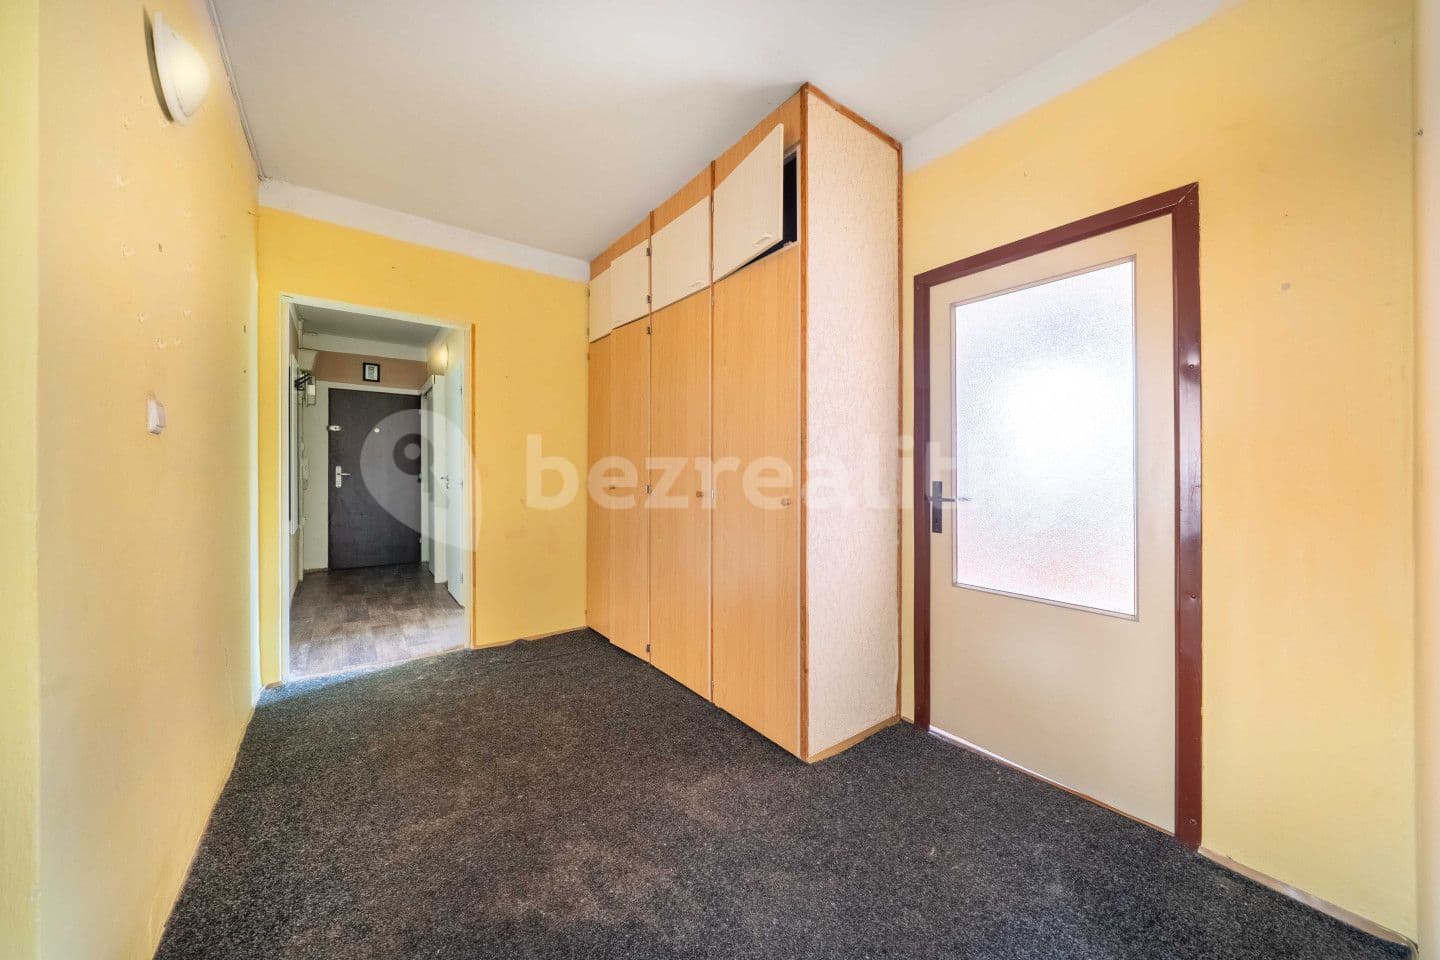 3 bedroom flat for sale, 75 m², Mládežnická, Jirkov, Ústecký Region